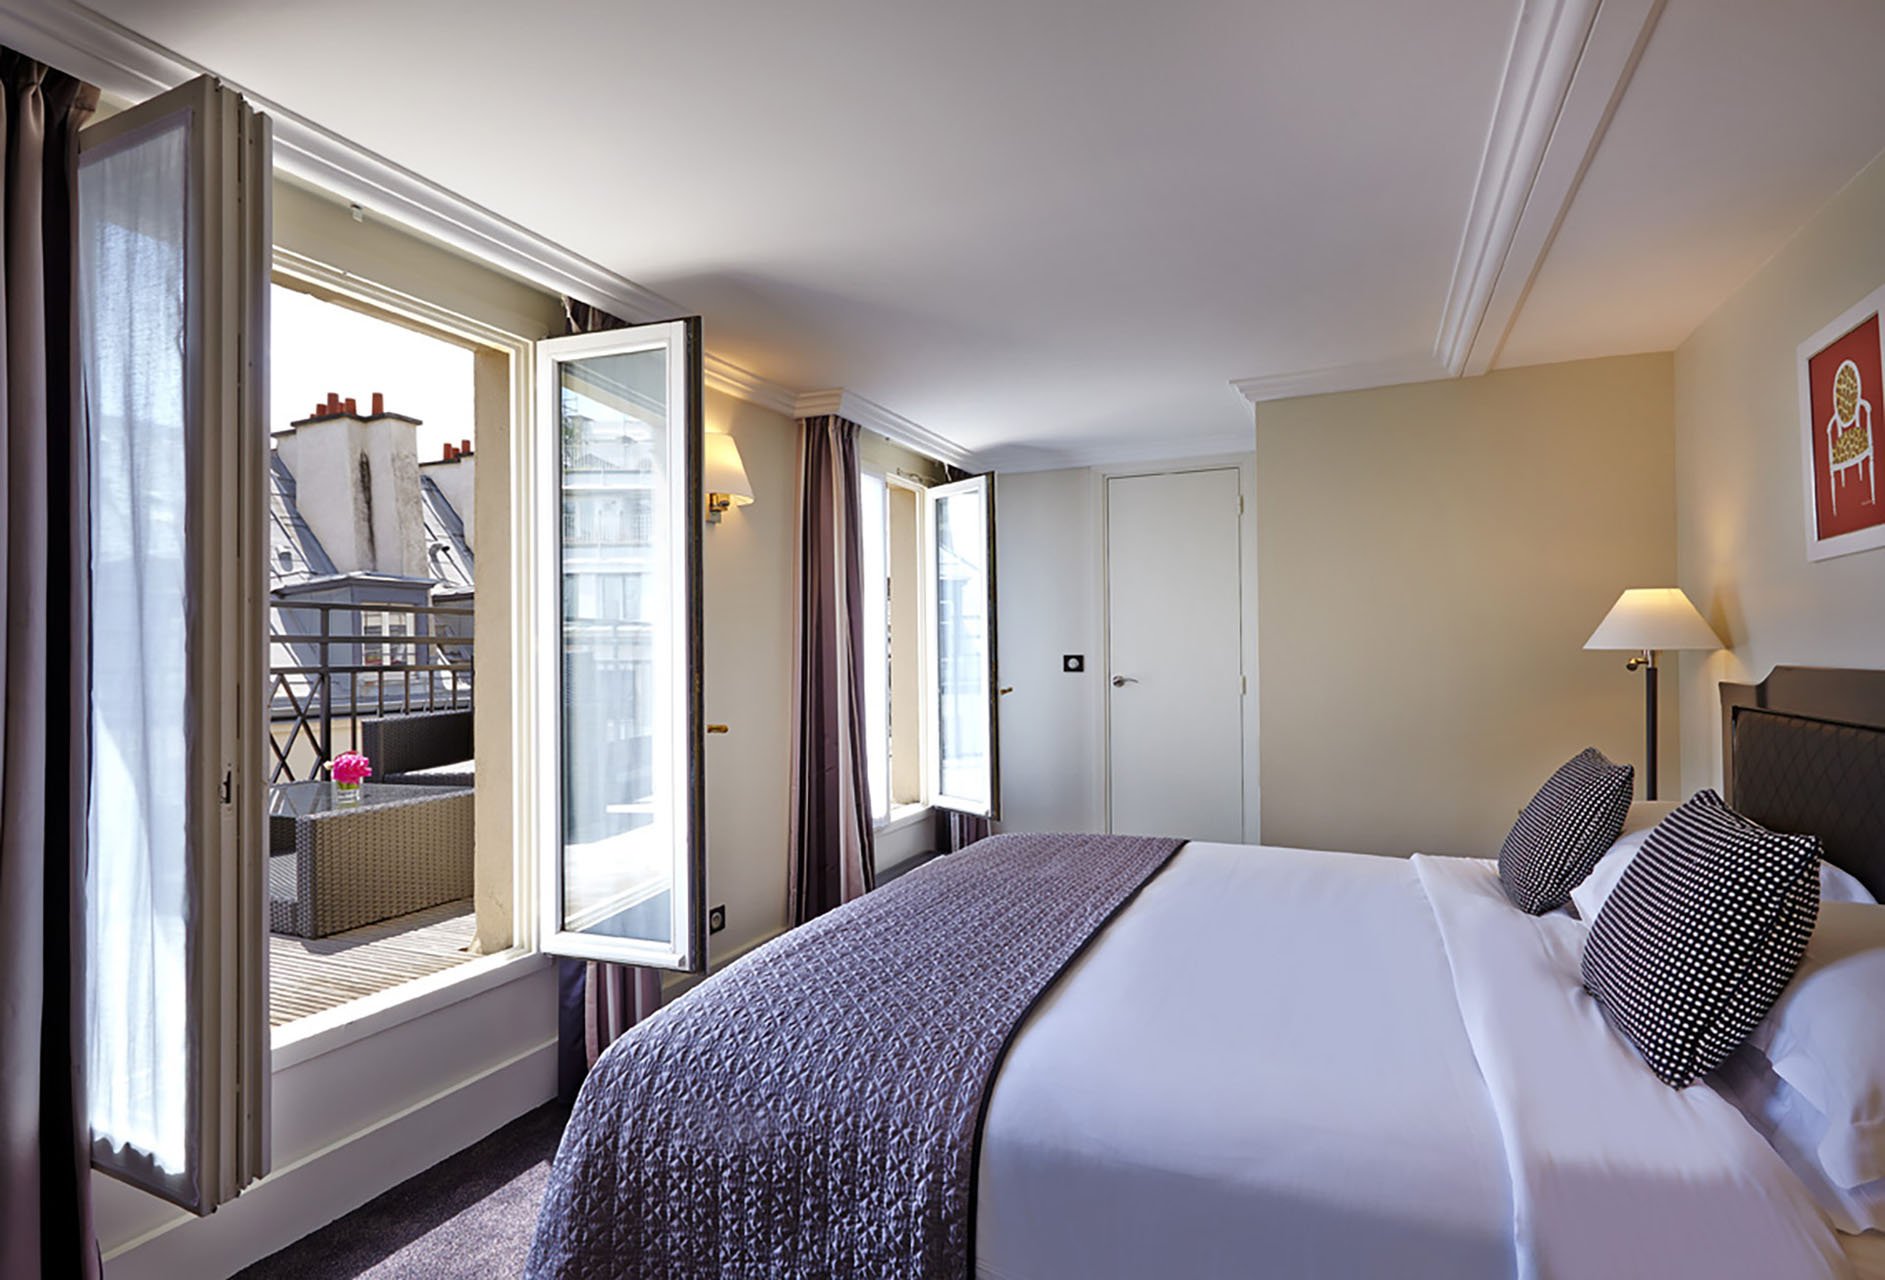 Deluxe room, Terrace, Paris Roofs, Hotel Paris rue Saint Honoré, 4 star hotel Paris Louvre Vendôme, 4 star hotel Saint Honoré